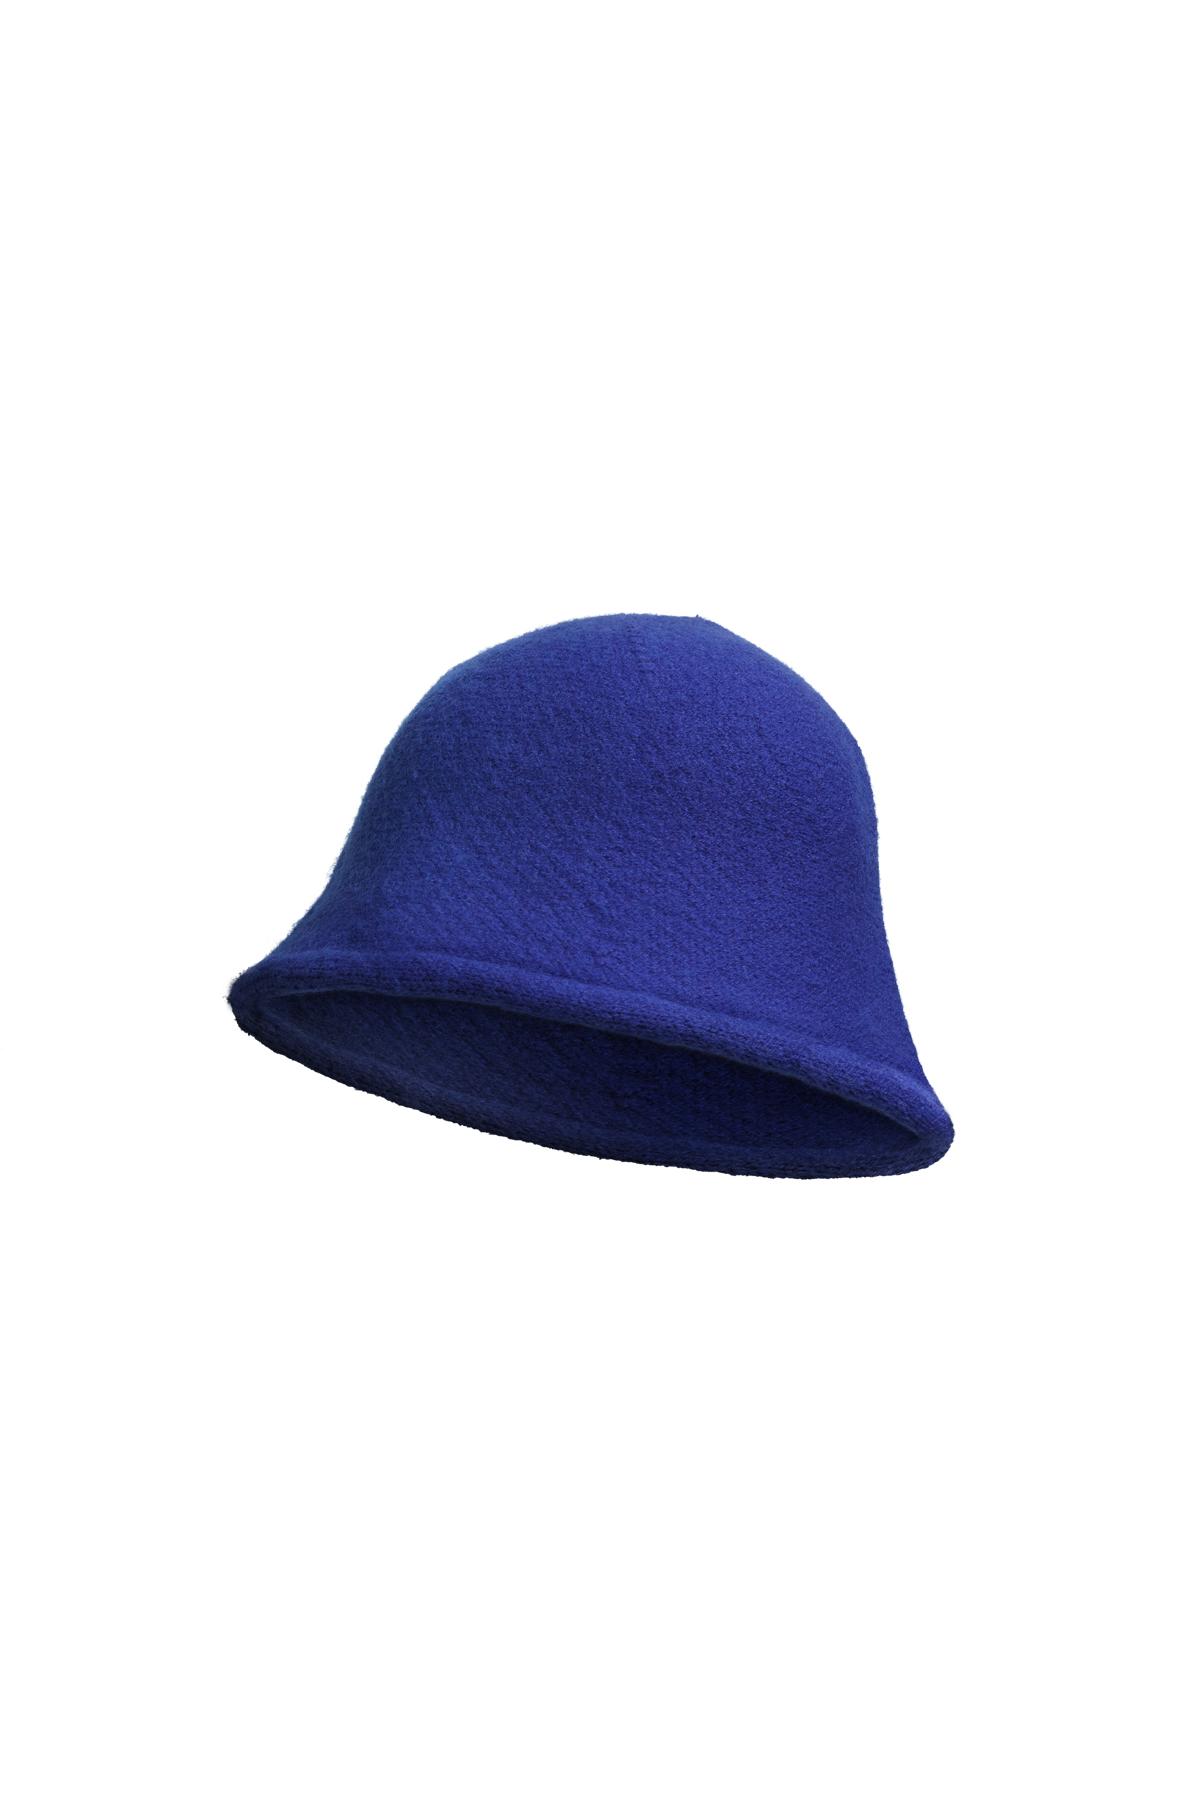 Bucket hat solid color Blue Acrylic h5 